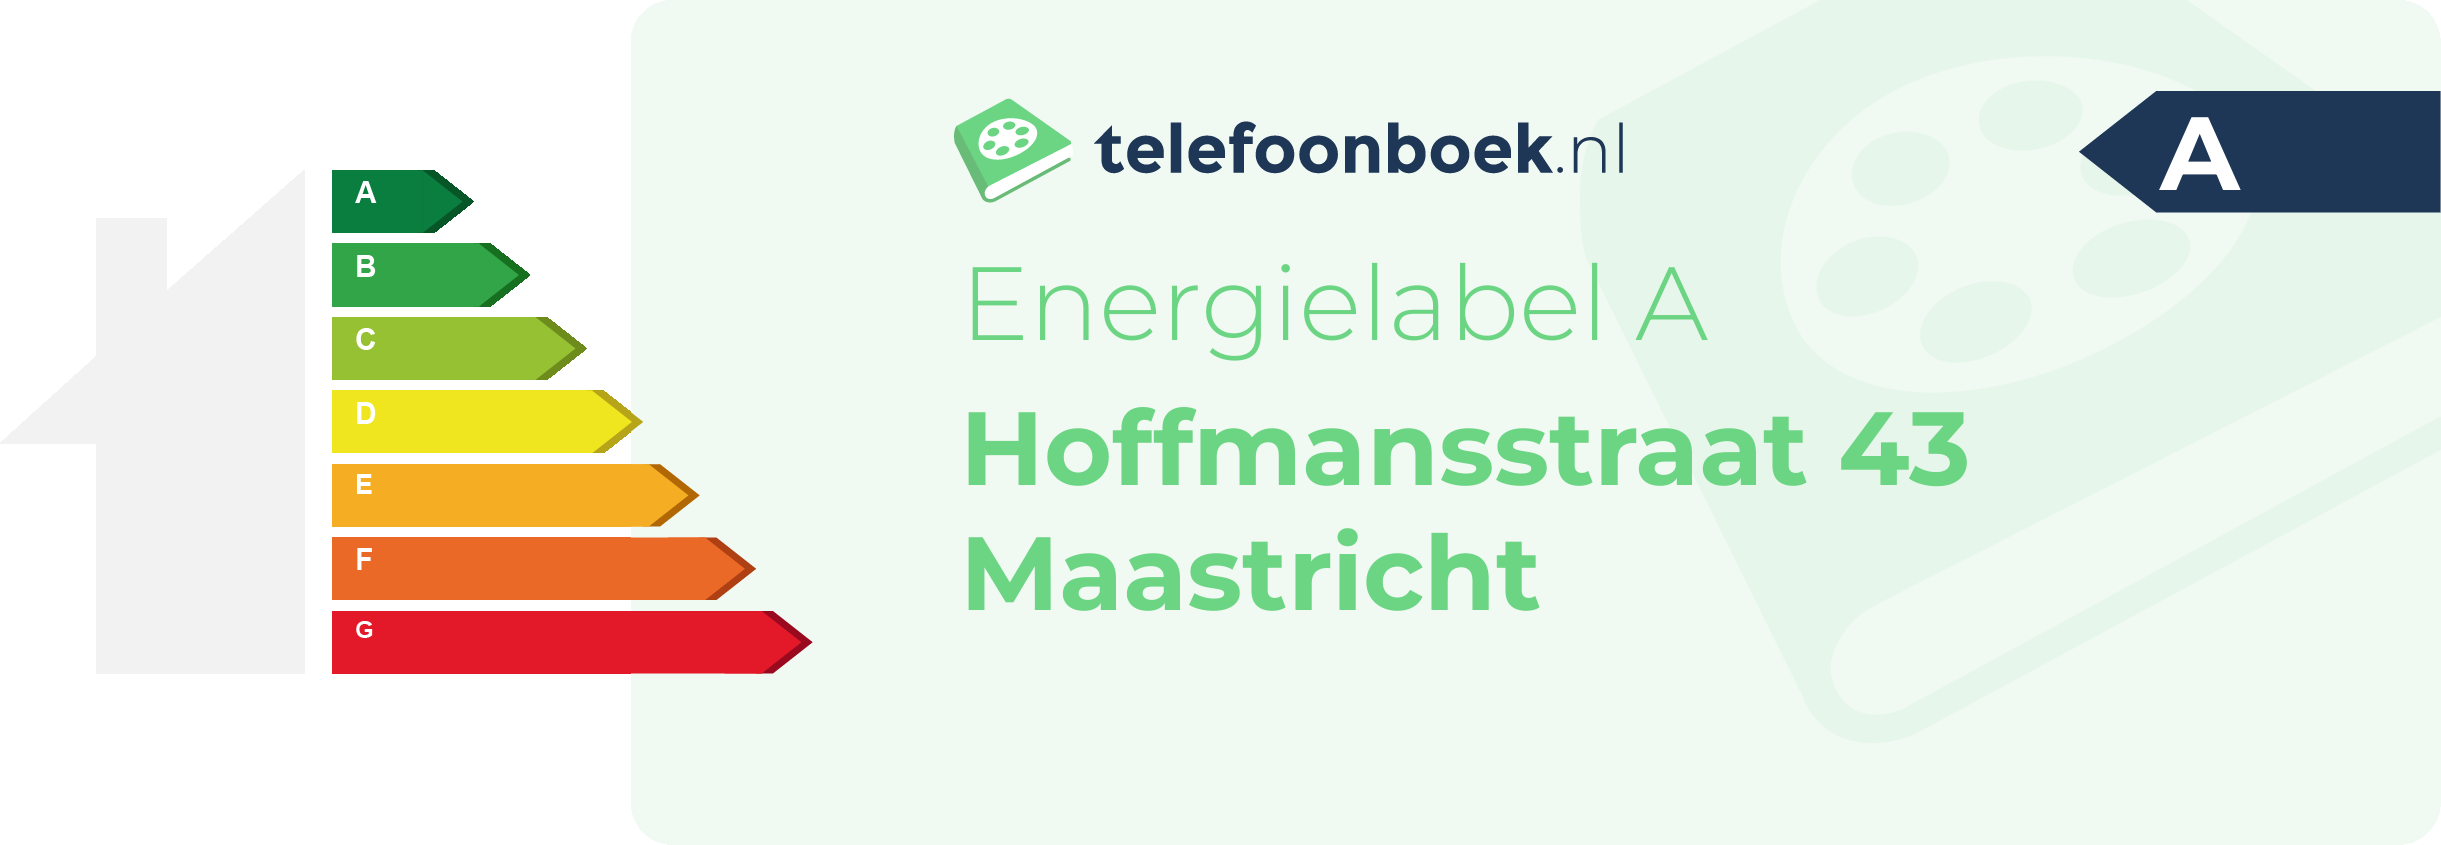 Energielabel Hoffmansstraat 43 Maastricht